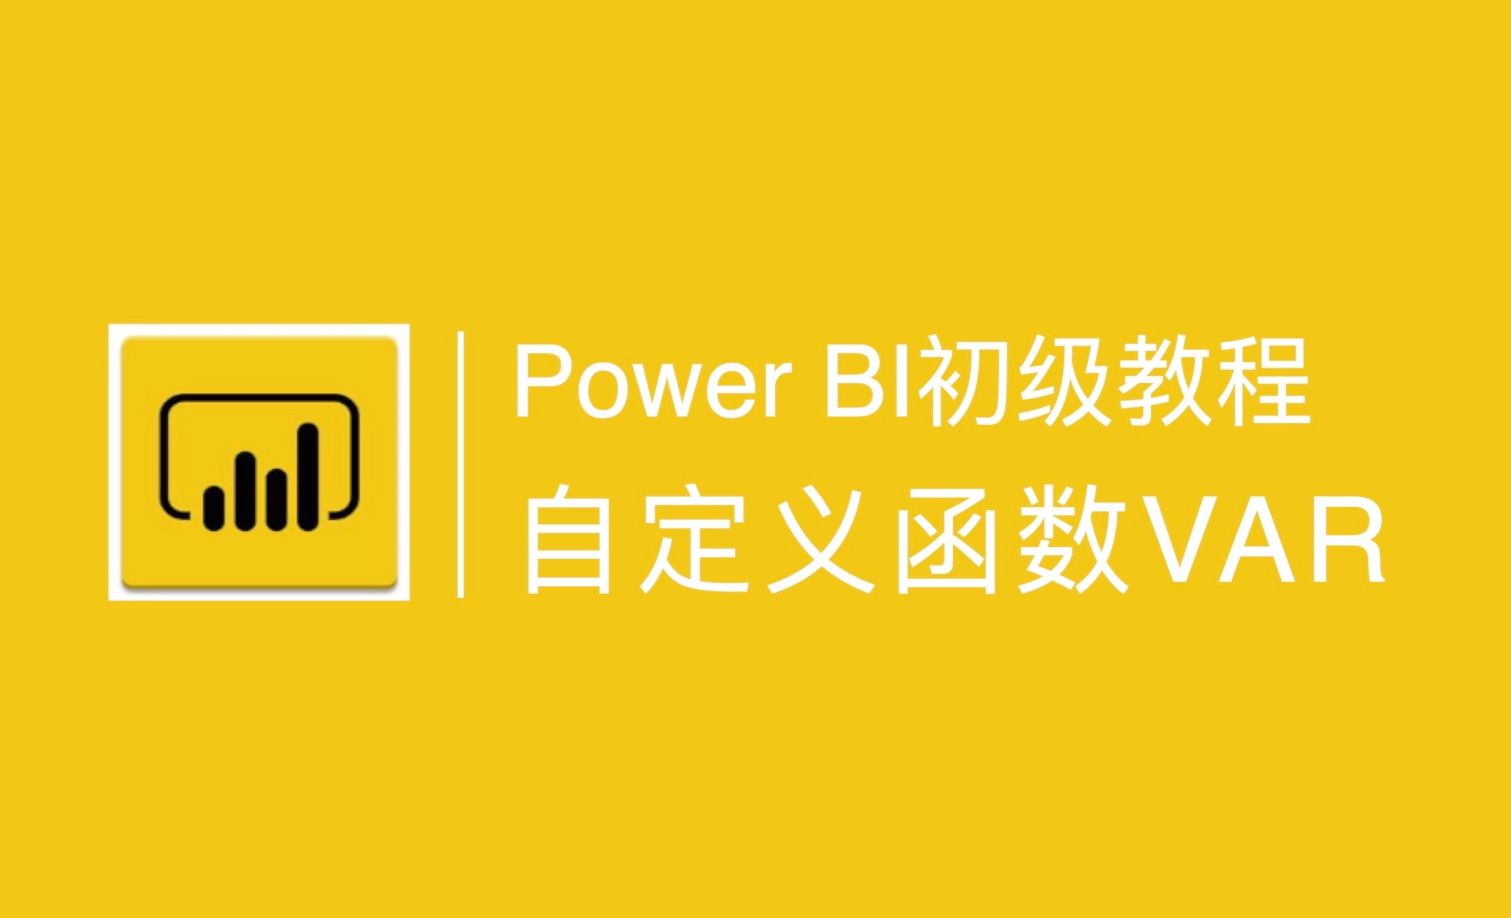 Power BI中自定义函数VAR的用法讲解